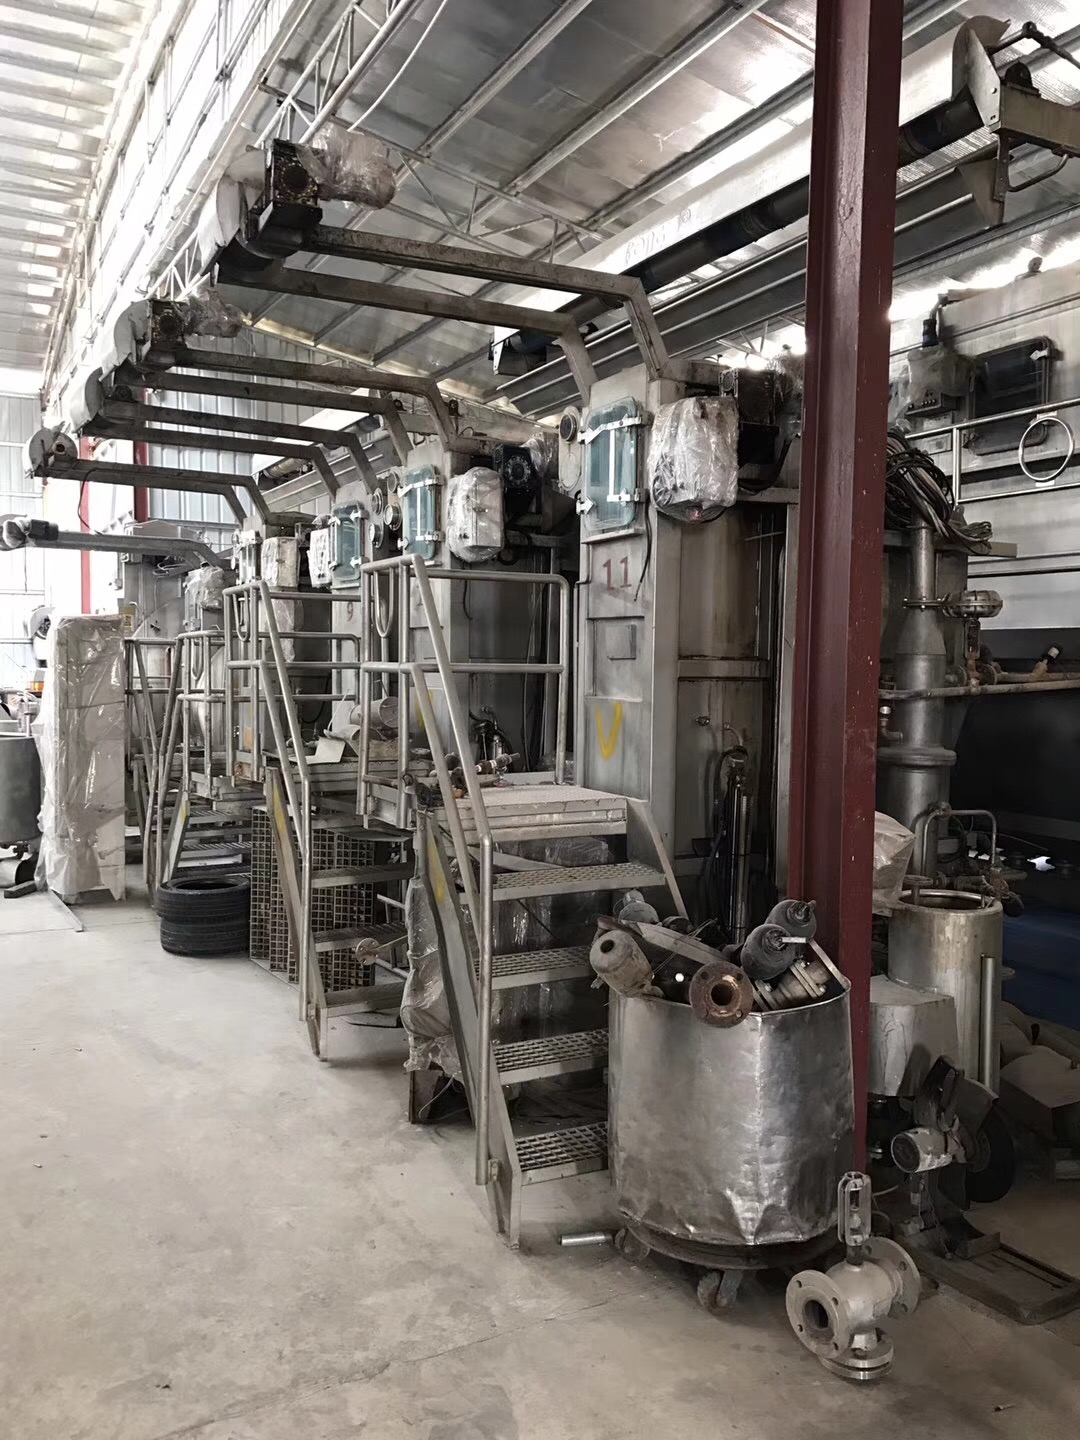 番禺区工厂废旧设备回收/啤酒生产线回收